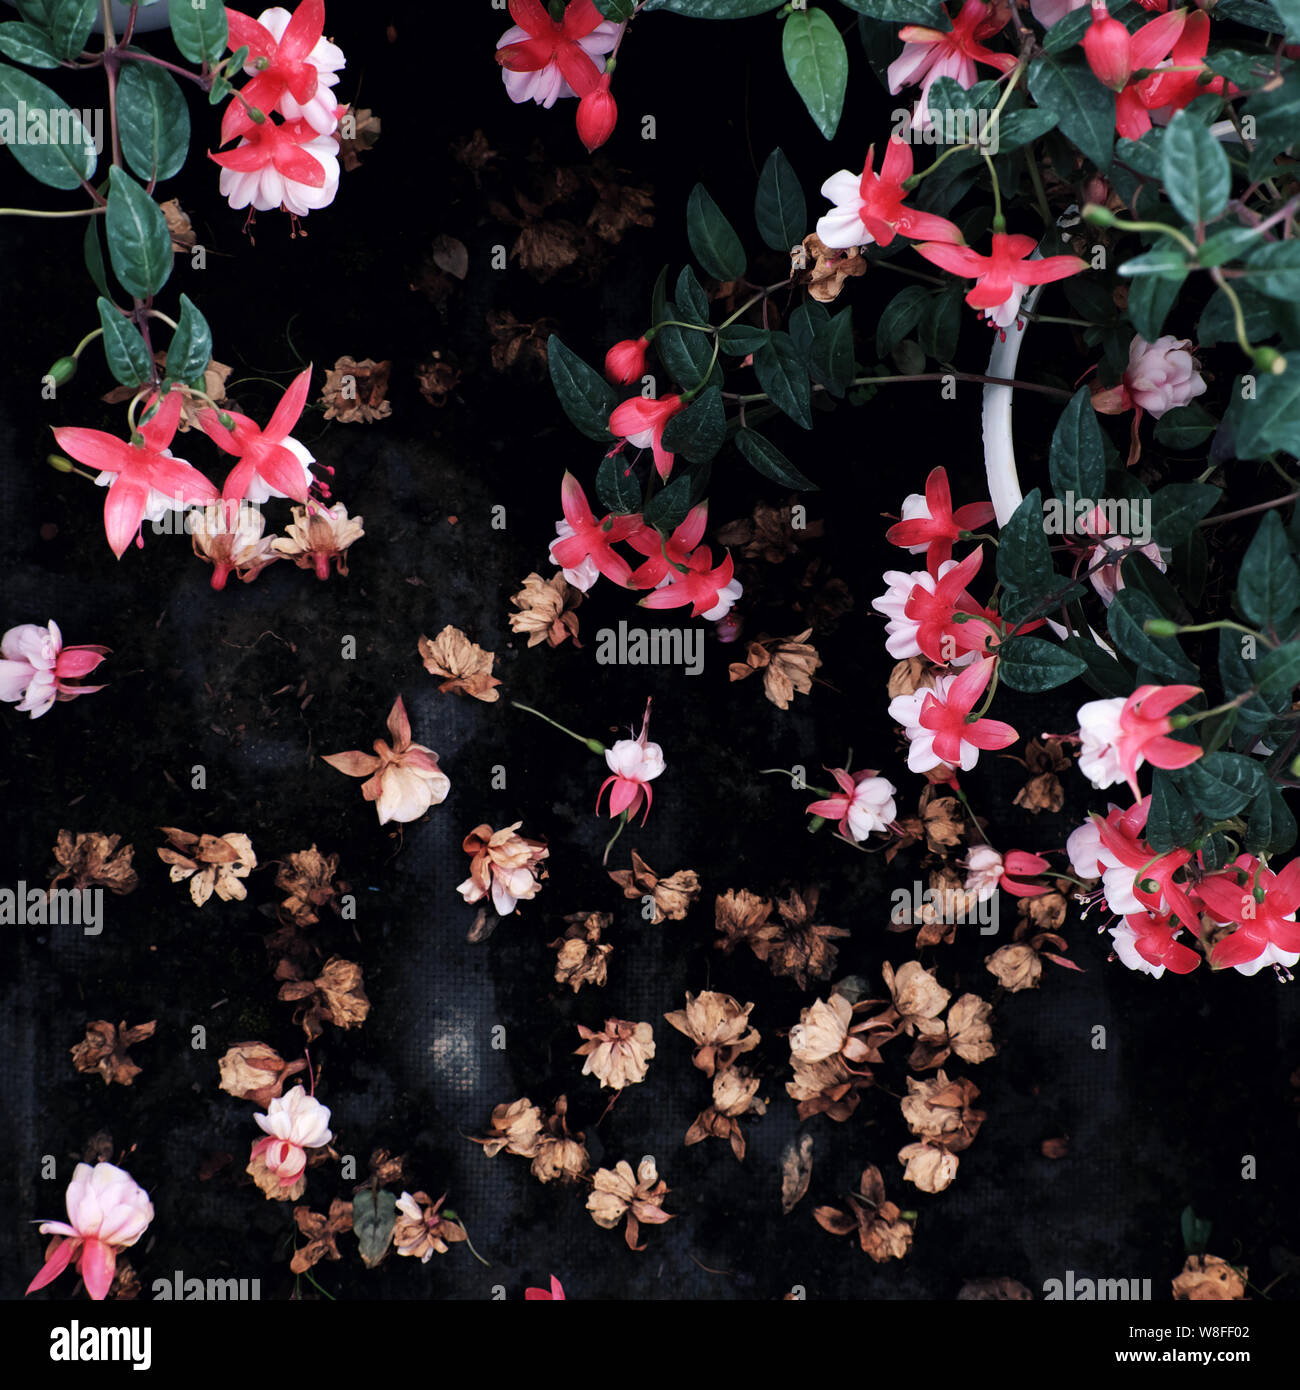 Hardy fuchsia fiore che sboccia luminosa in rosa, fiori cadono sul pavimento tra il verde delle piante ornamentali in giardino rendono il contrasto tra freschi e asciutti flora Foto Stock